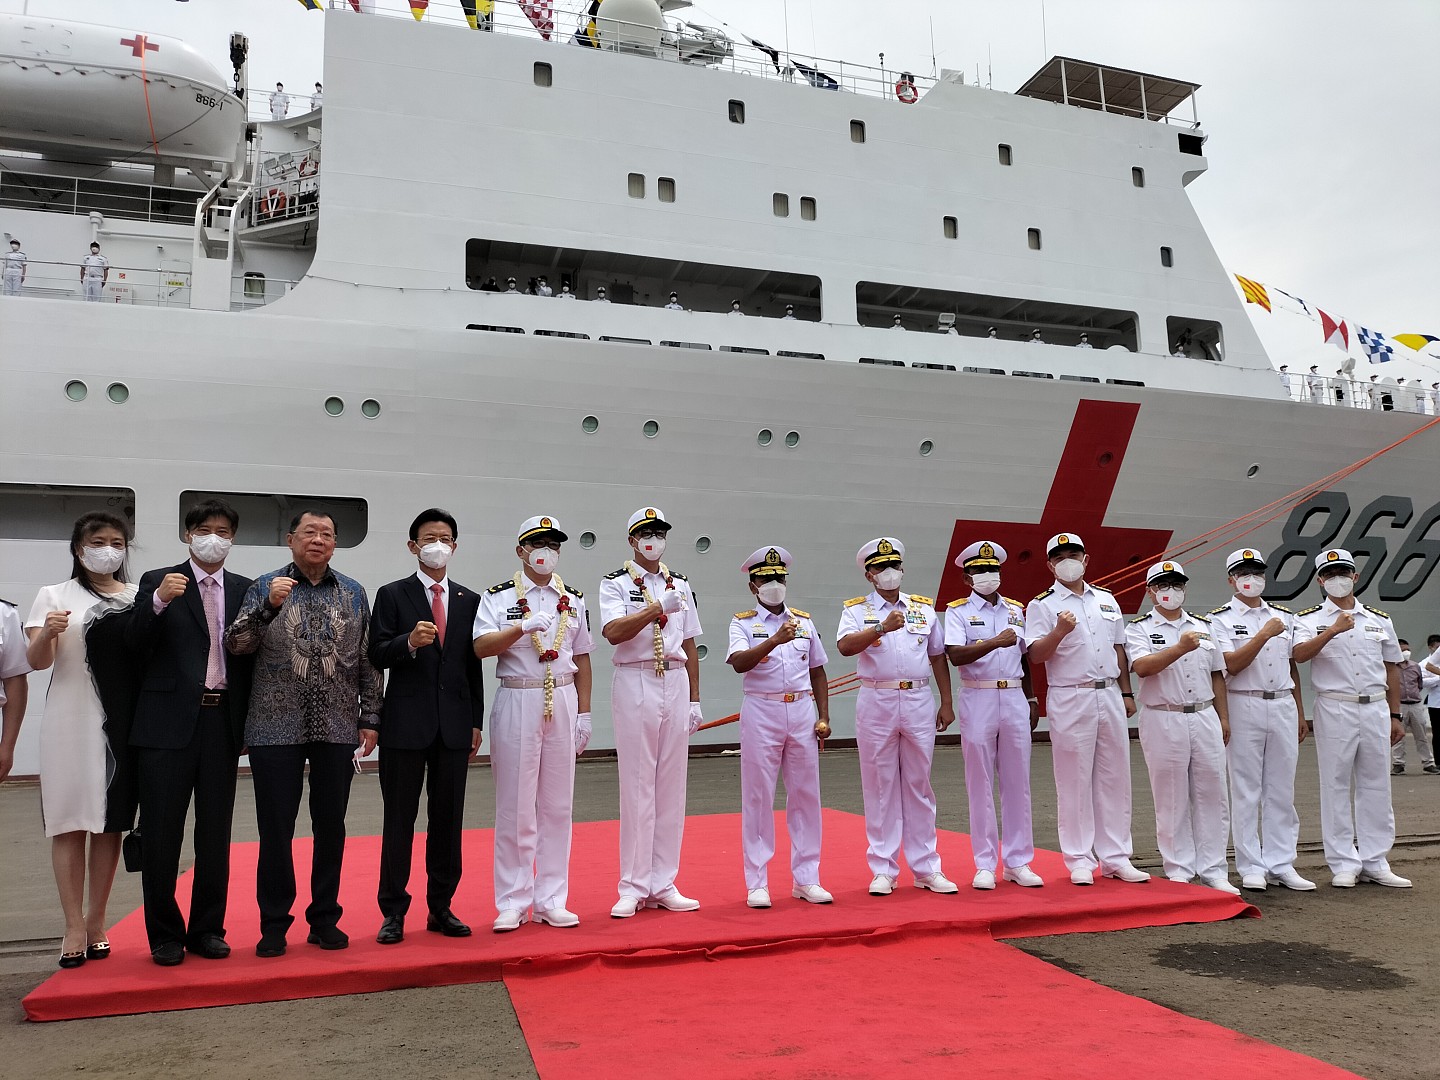 最大的866岱山岛号医院船于11月10日抵达印尼首都附近港口（驻印尼大使馆供图/乔鑫鑫提供）